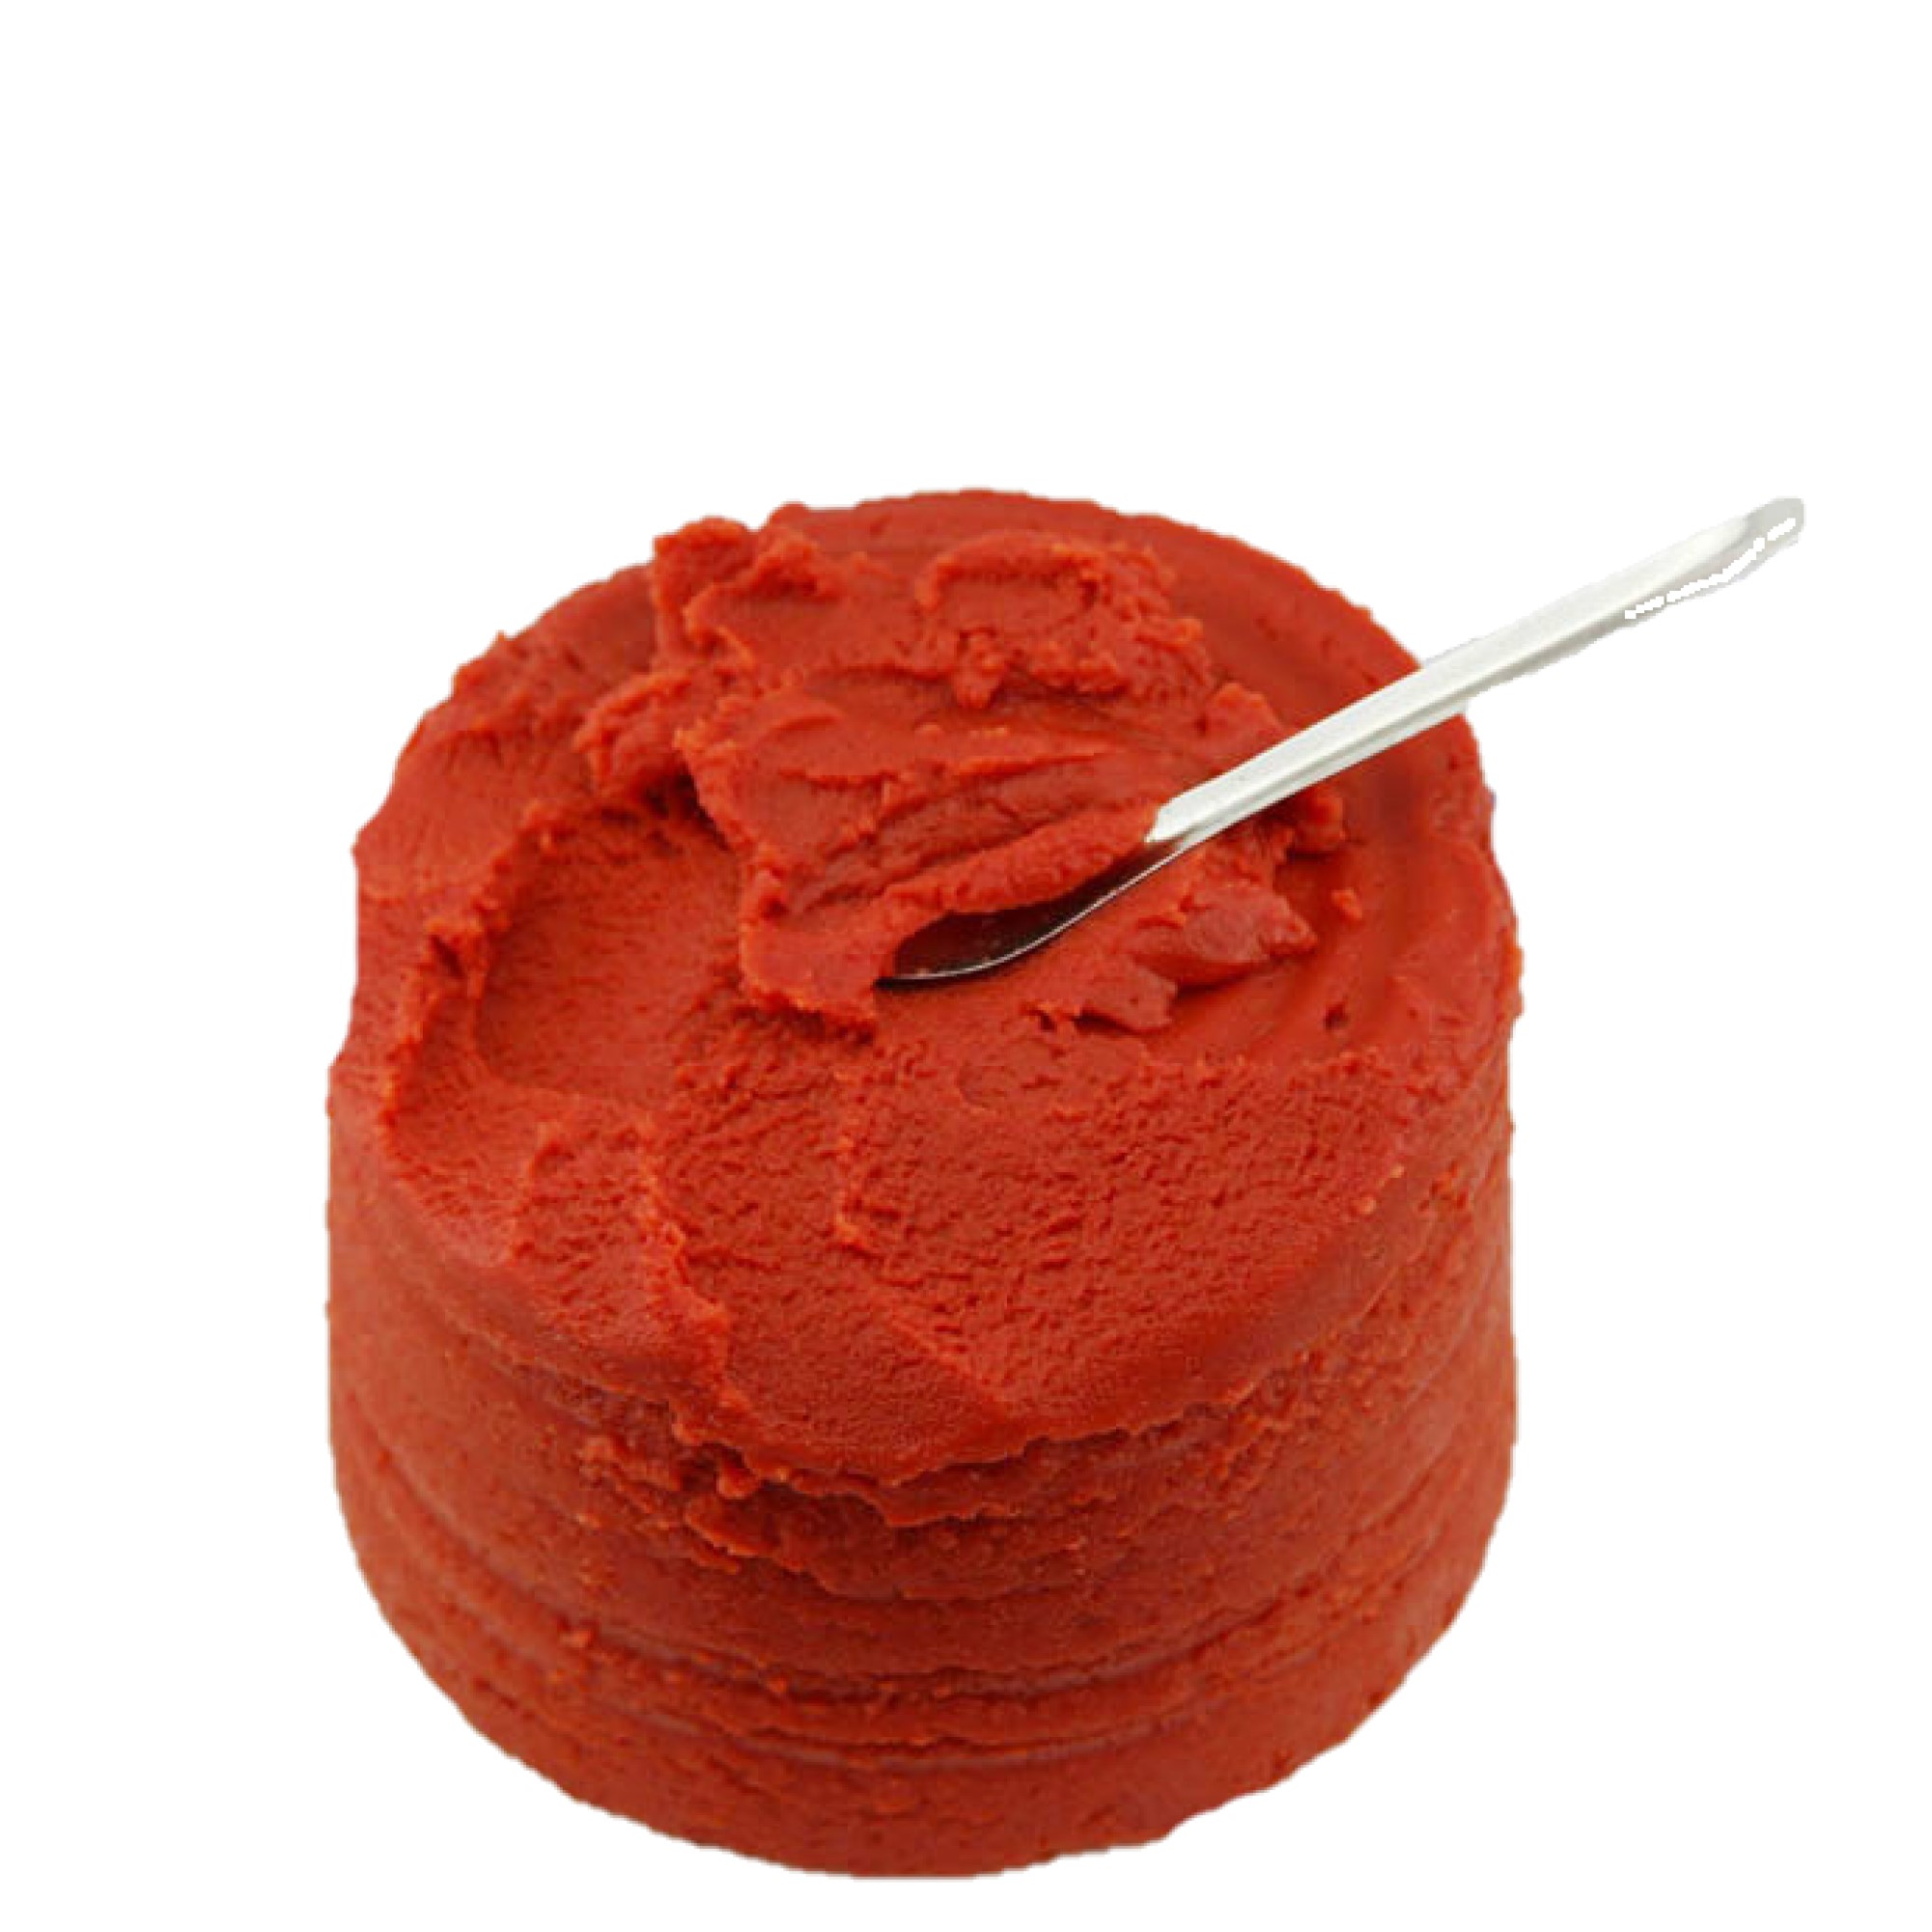 conserva pasta de tomate 2200g 28-30% brix marca GINNY